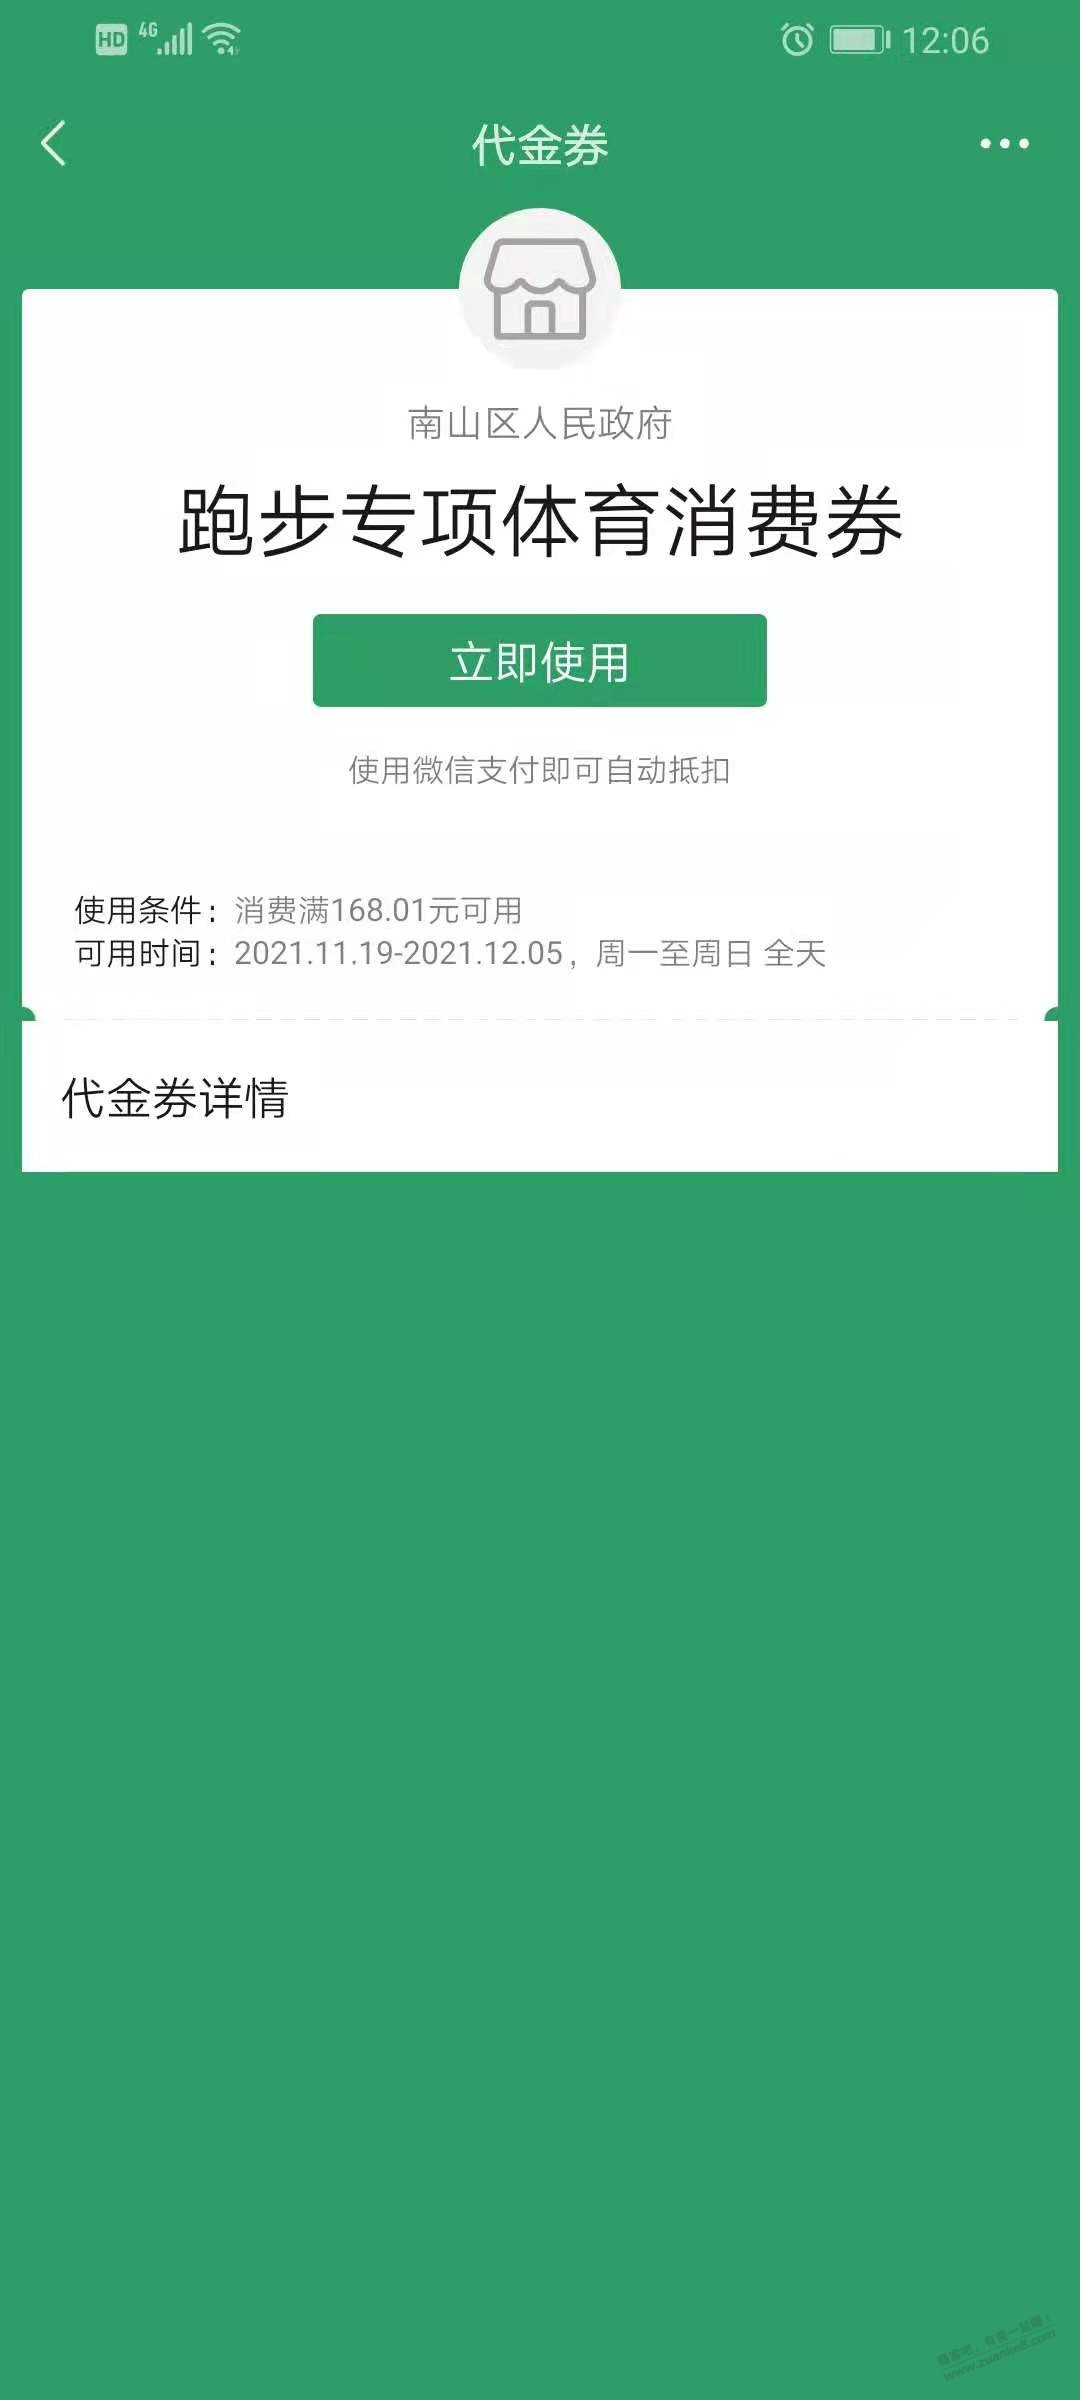 中了南山168消费券-惠小助(52huixz.com)